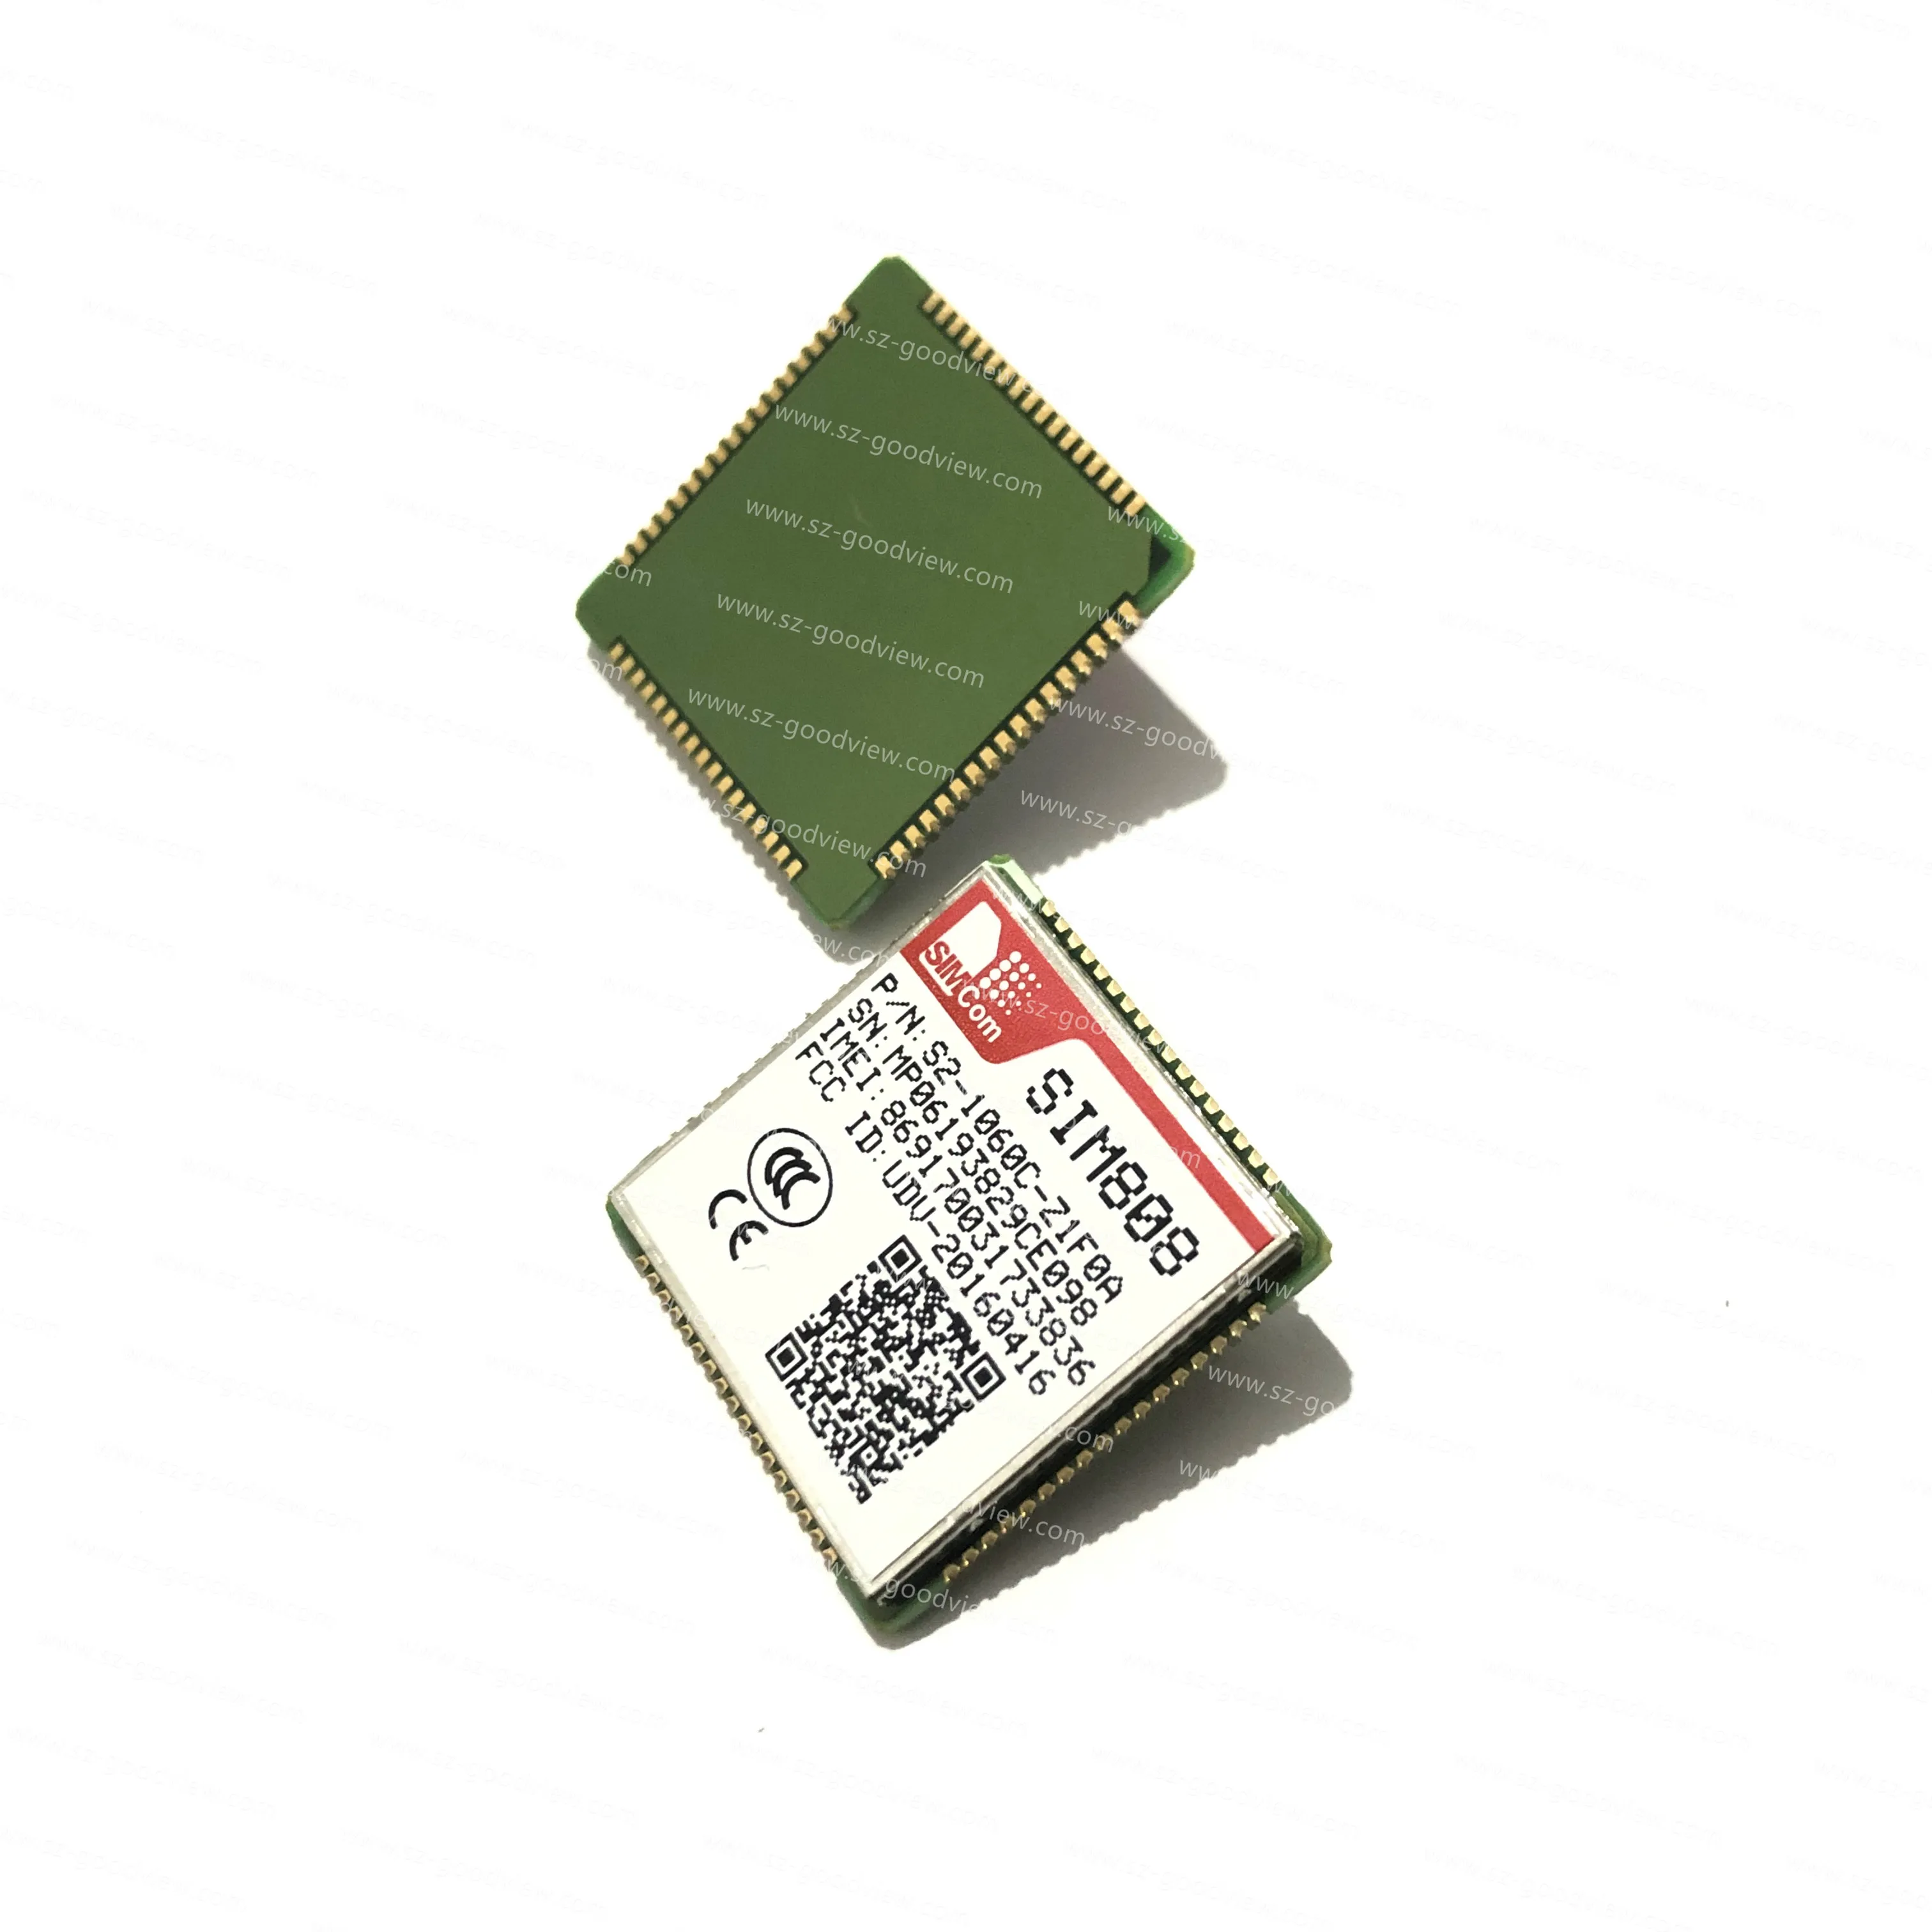 
SIMCOM SIM808 S2-1060C-Z1F0E GSM GPS BT модуль 